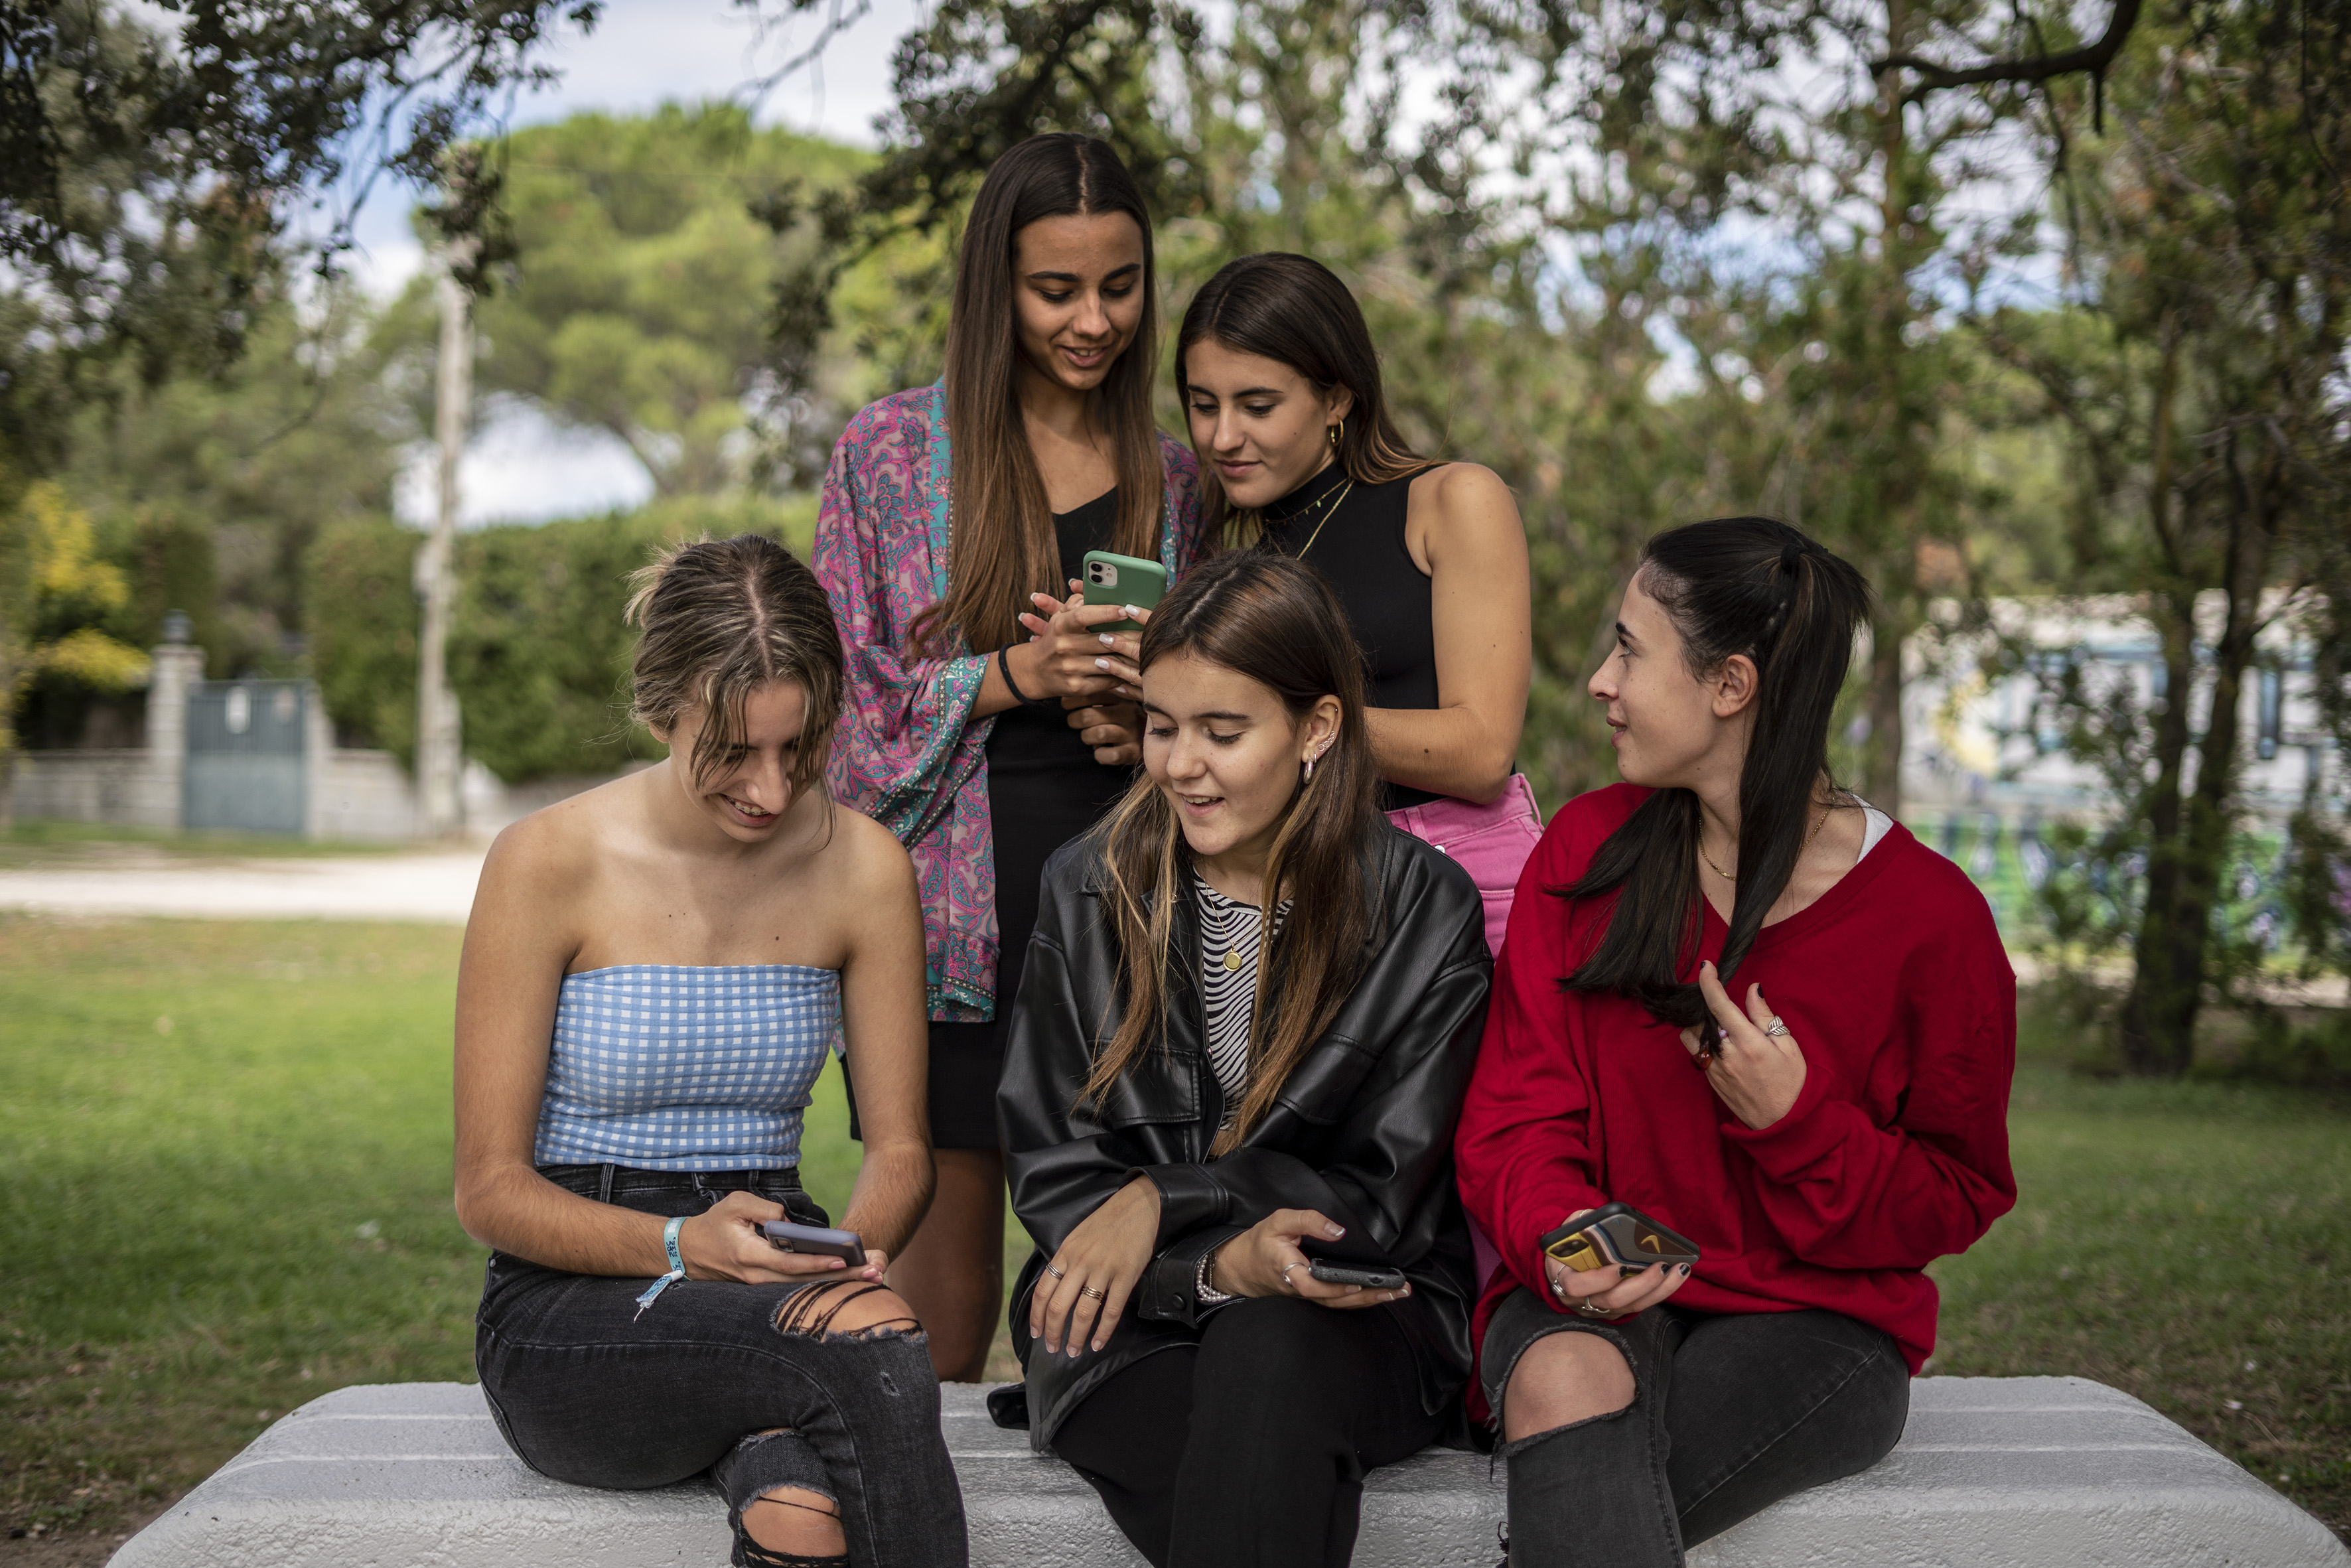 Xxxii Com Xnvidoe - La adolescencia sin filtros en Instagram | Sociedad | EL PAÃS